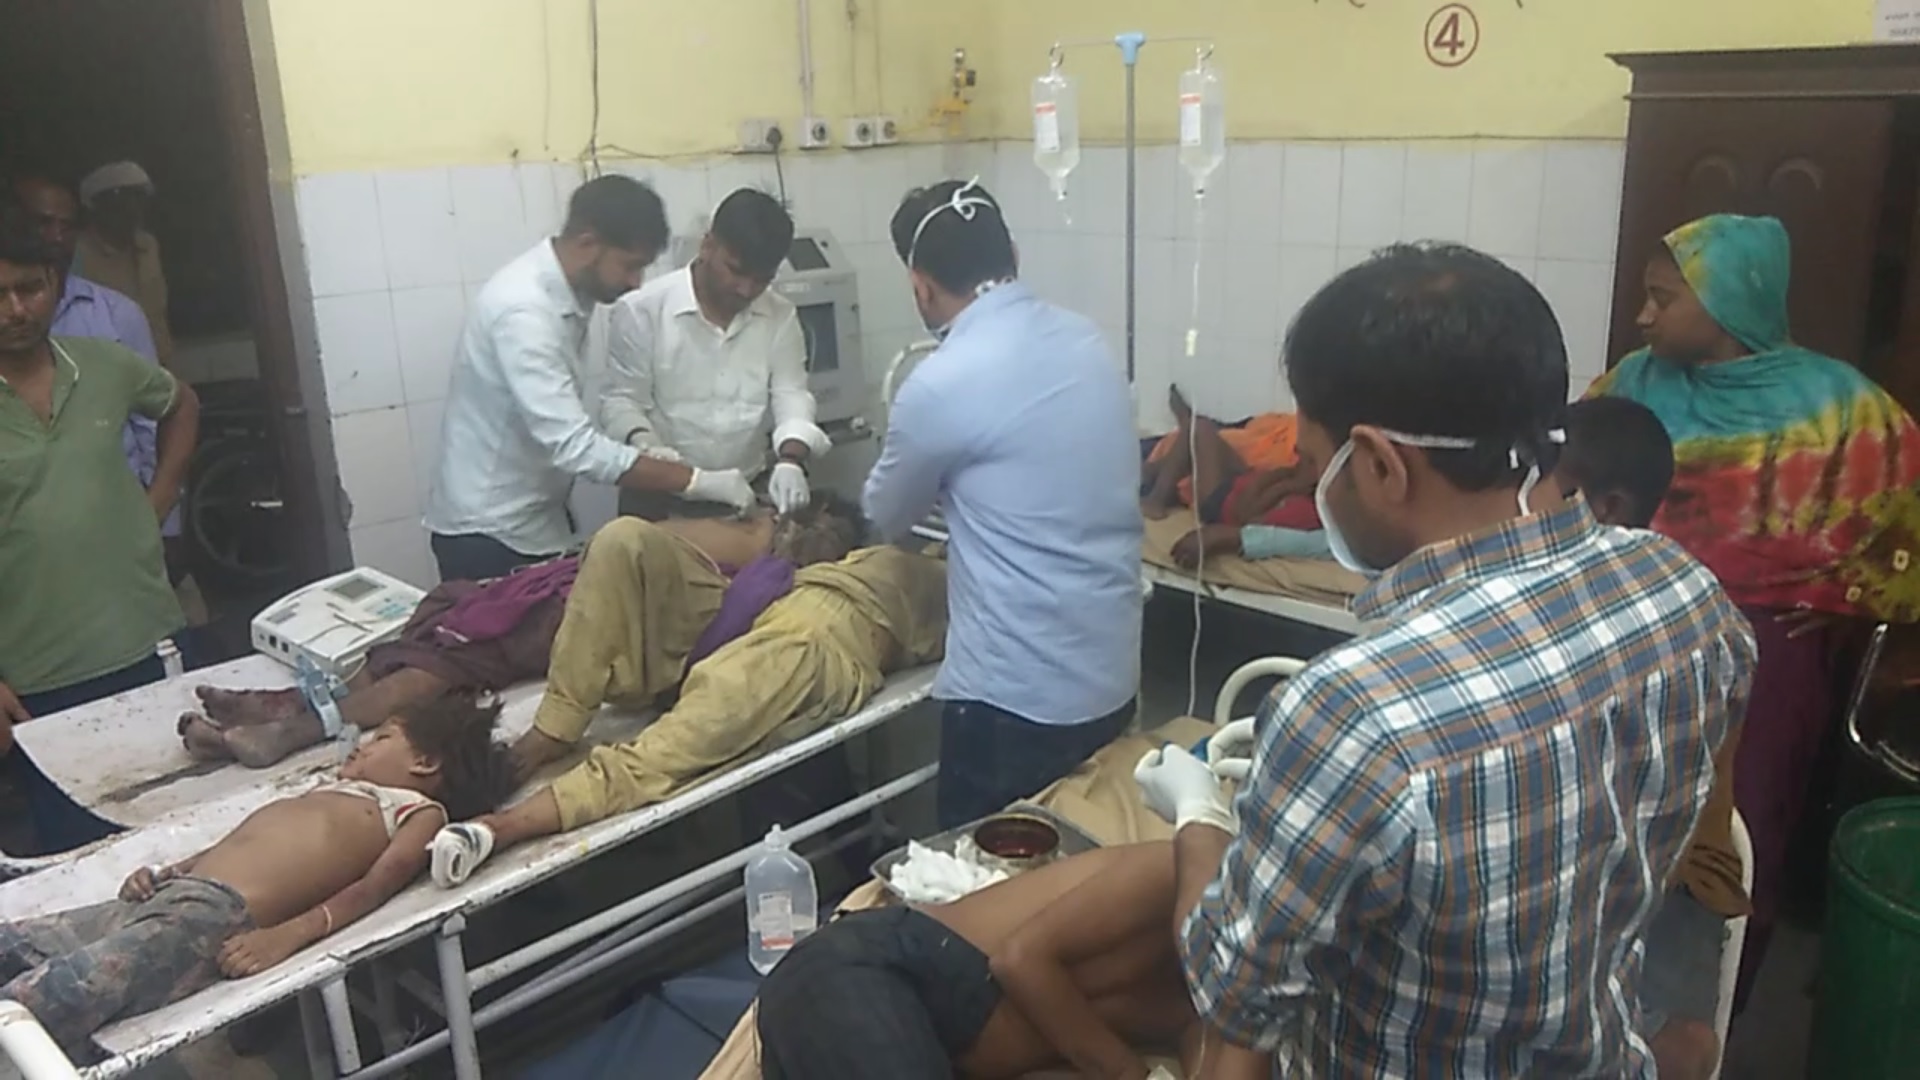 Accident : महवा में भरतपुर रोड पर खानाबदोश परिवार को मारी टक्कर, तीन की मौके पर
मौत - image